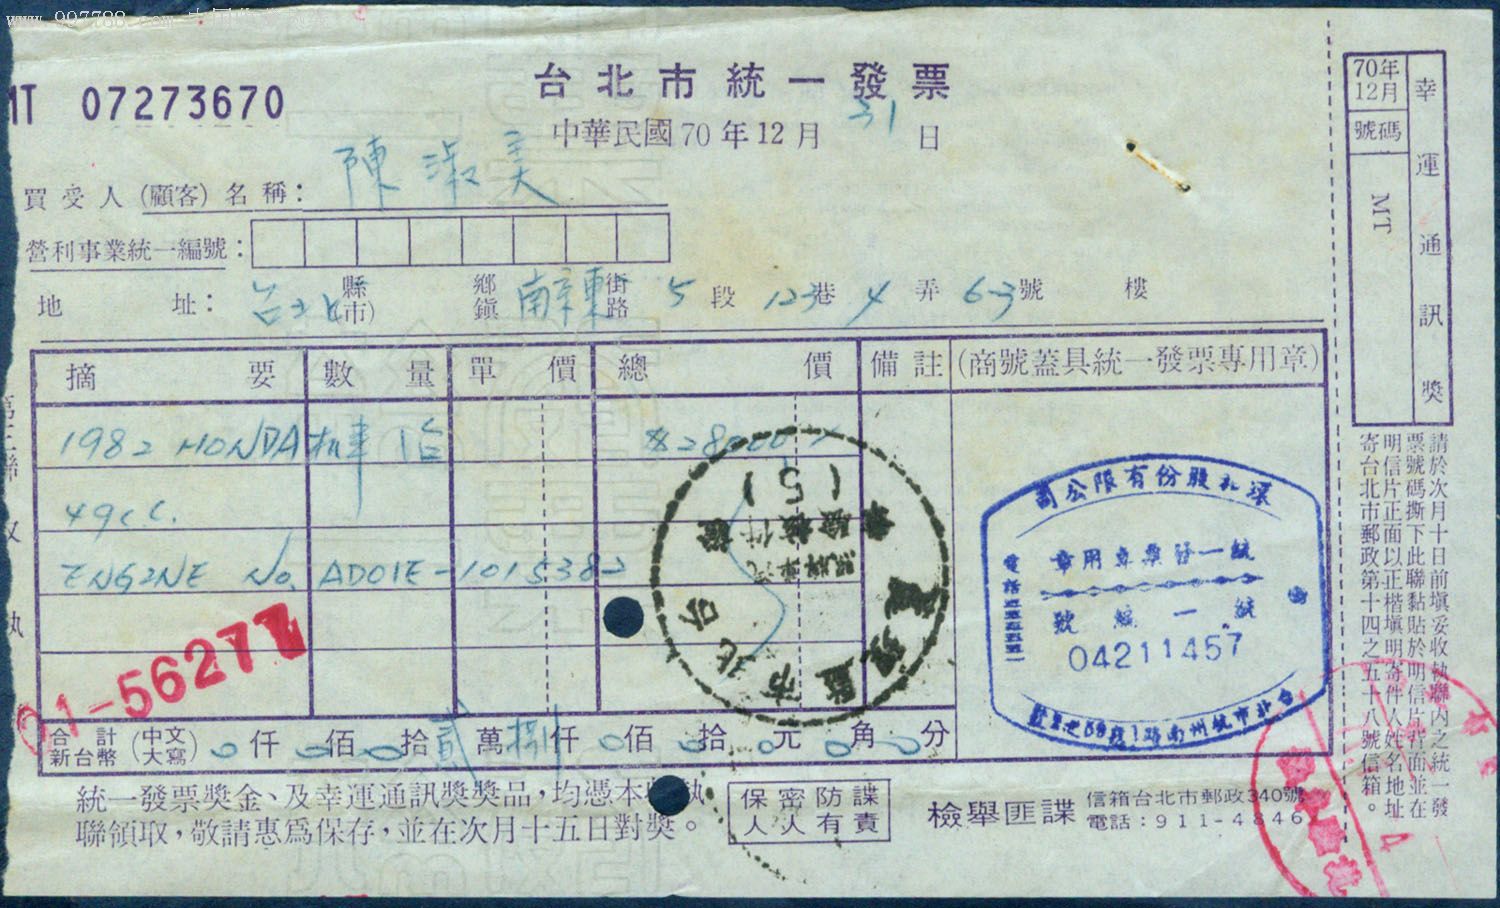 日本本田49cc机车1981年基隆海关进口证明书,完税照及销售有奖发票(陈